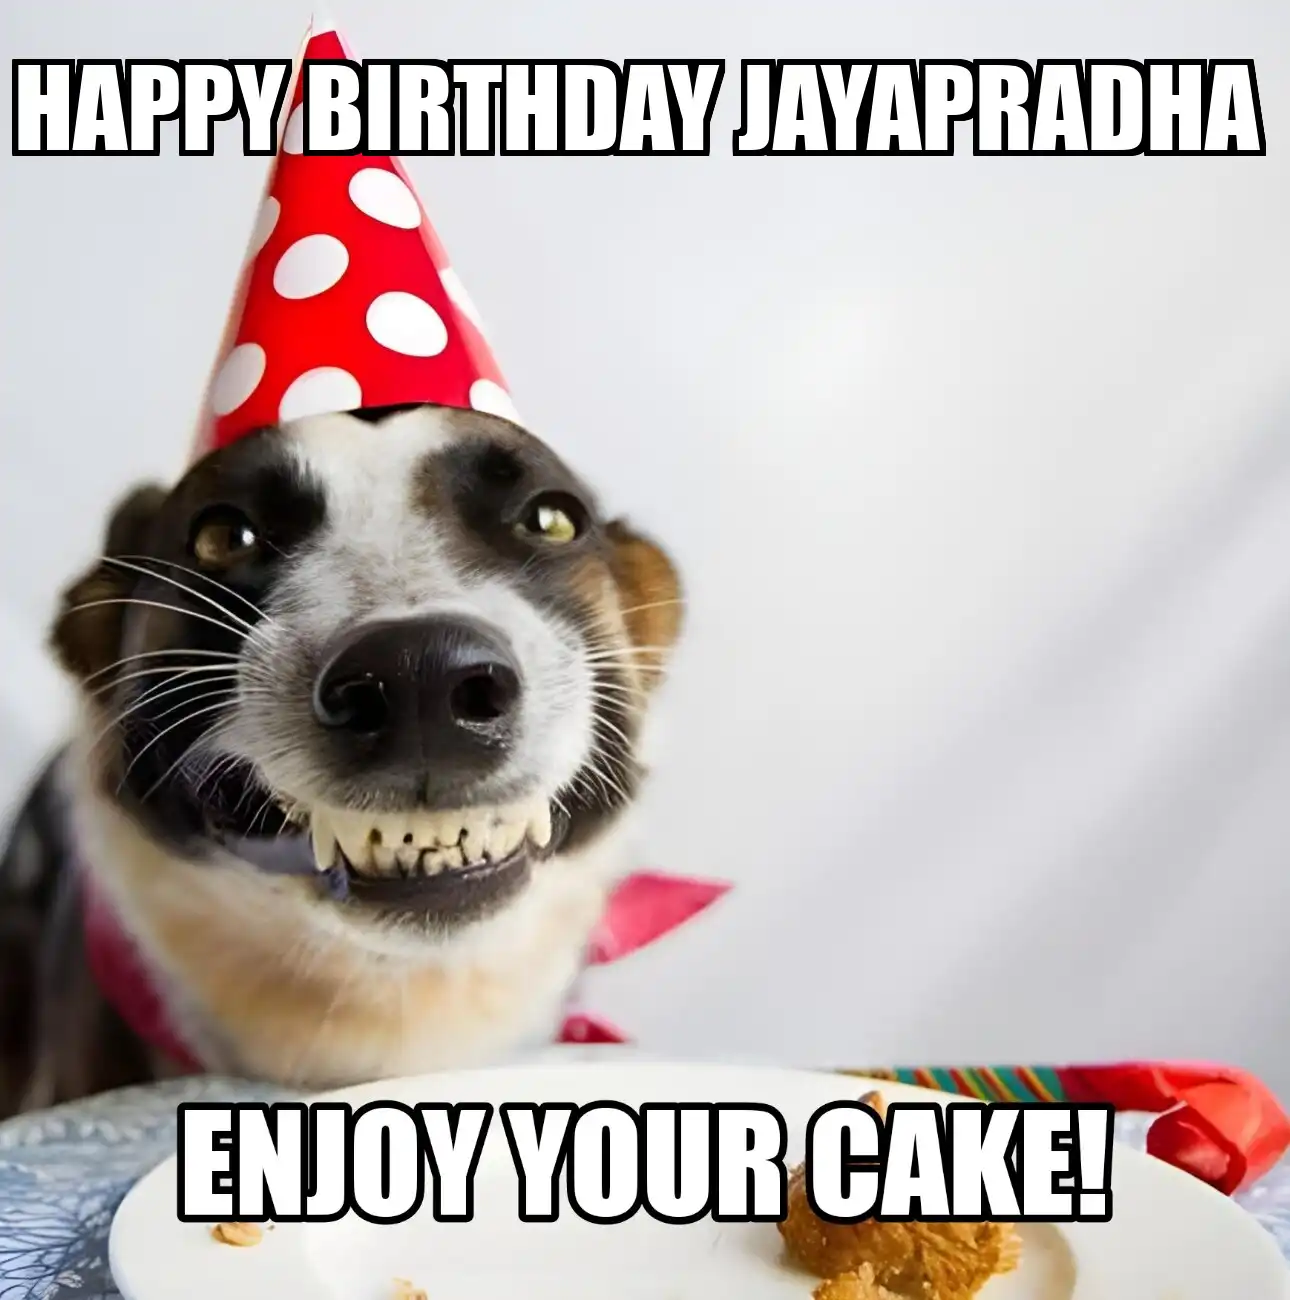 Happy Birthday Jayapradha Enjoy Your Cake Dog Meme